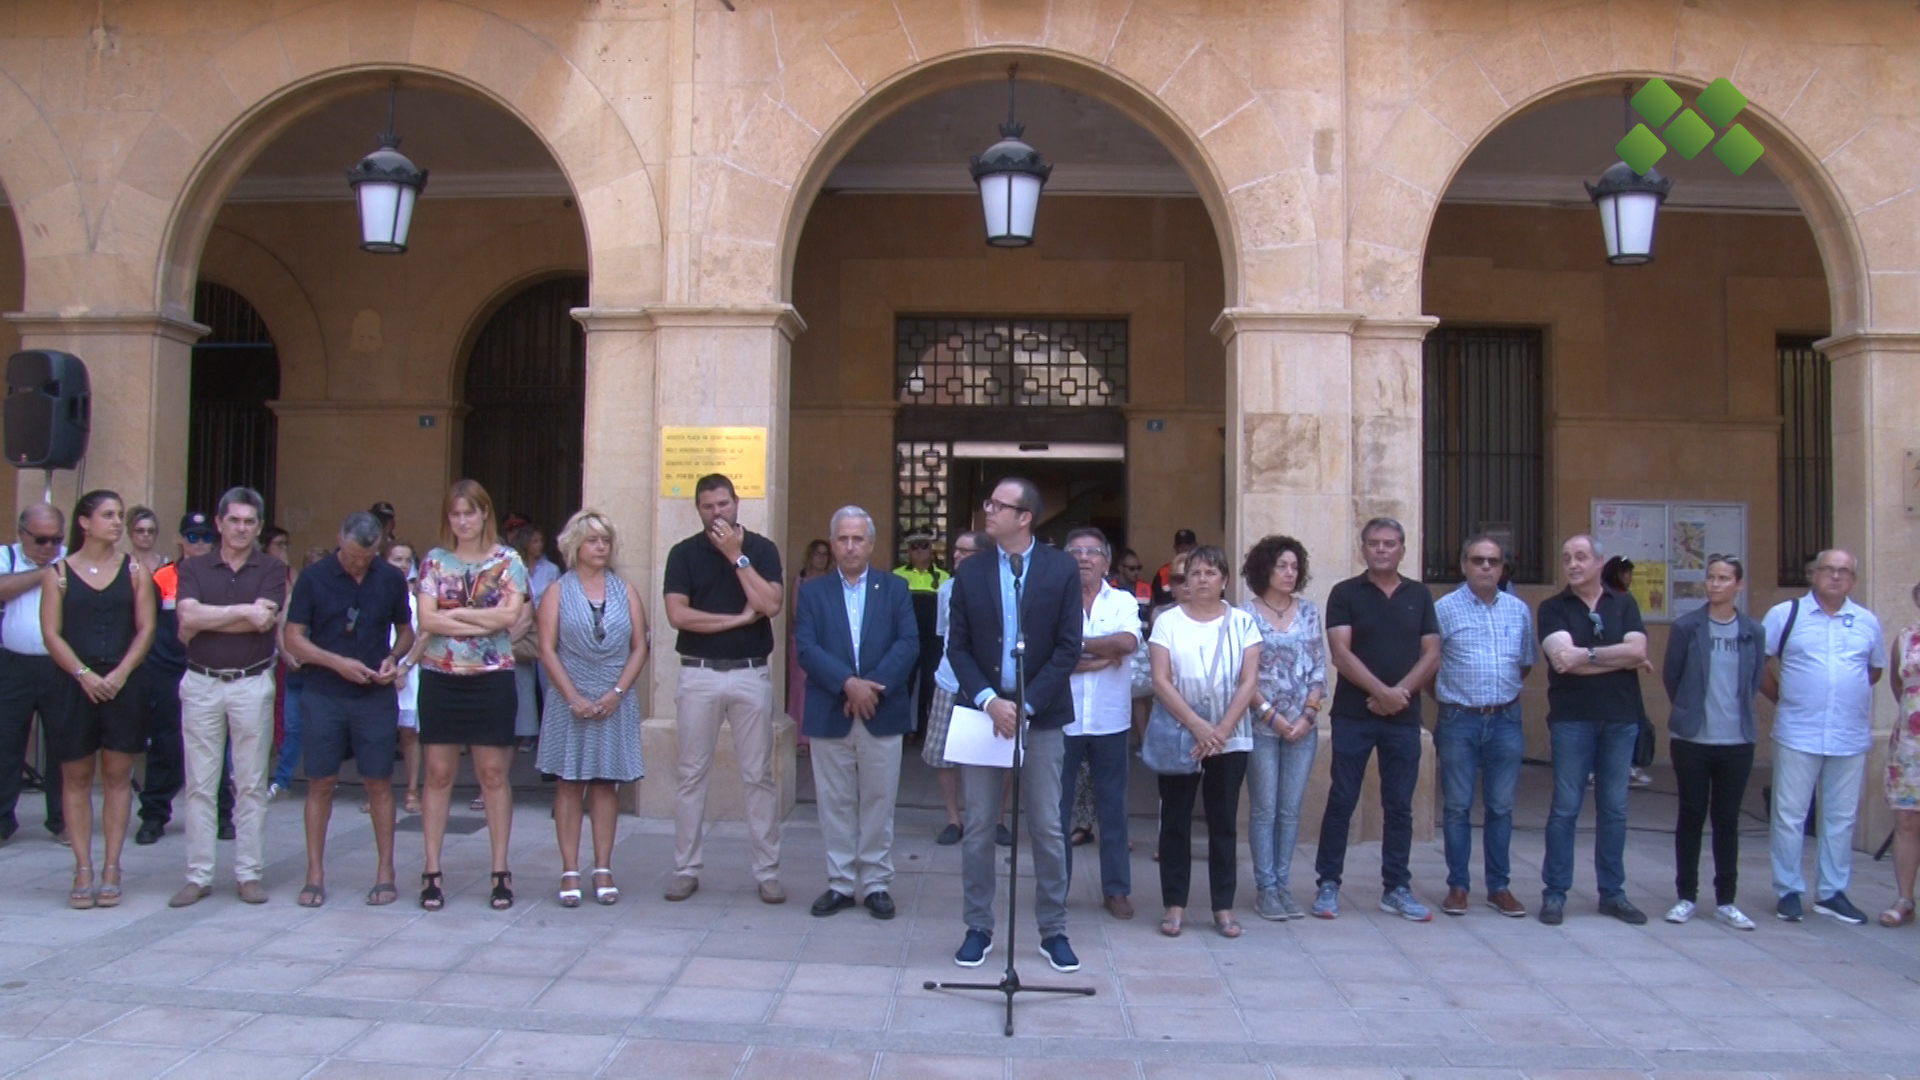 Mollerussa se suma a les mostres de condol i de rebuig pels atemptats terroristes ocorreguts  a Catalunya